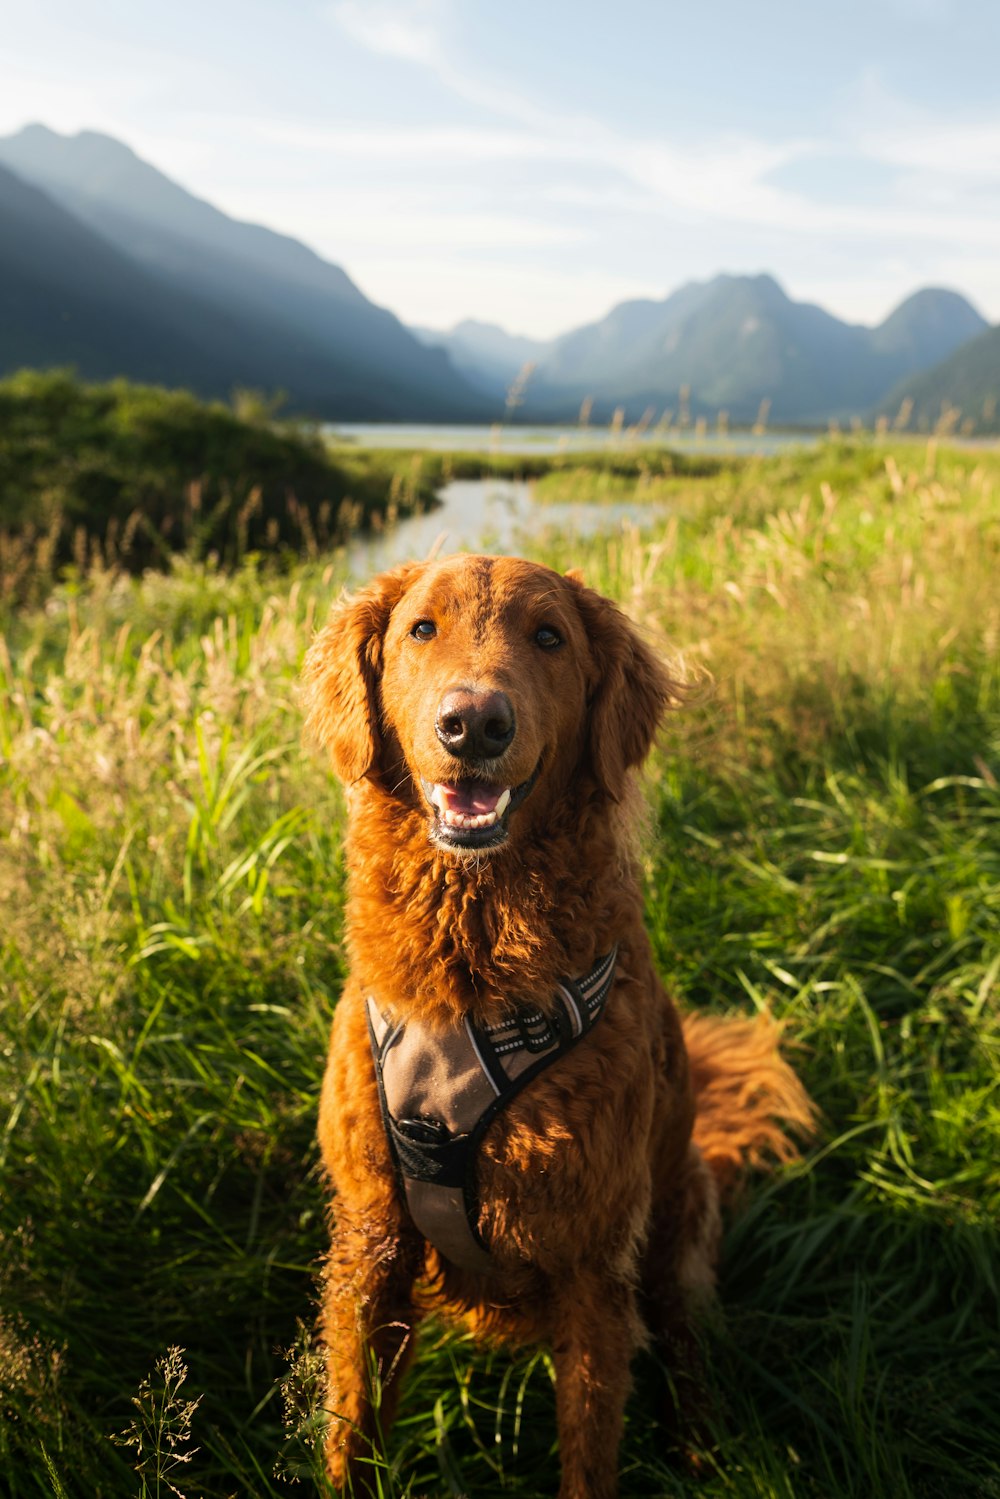 a dog sitting in a grassy field